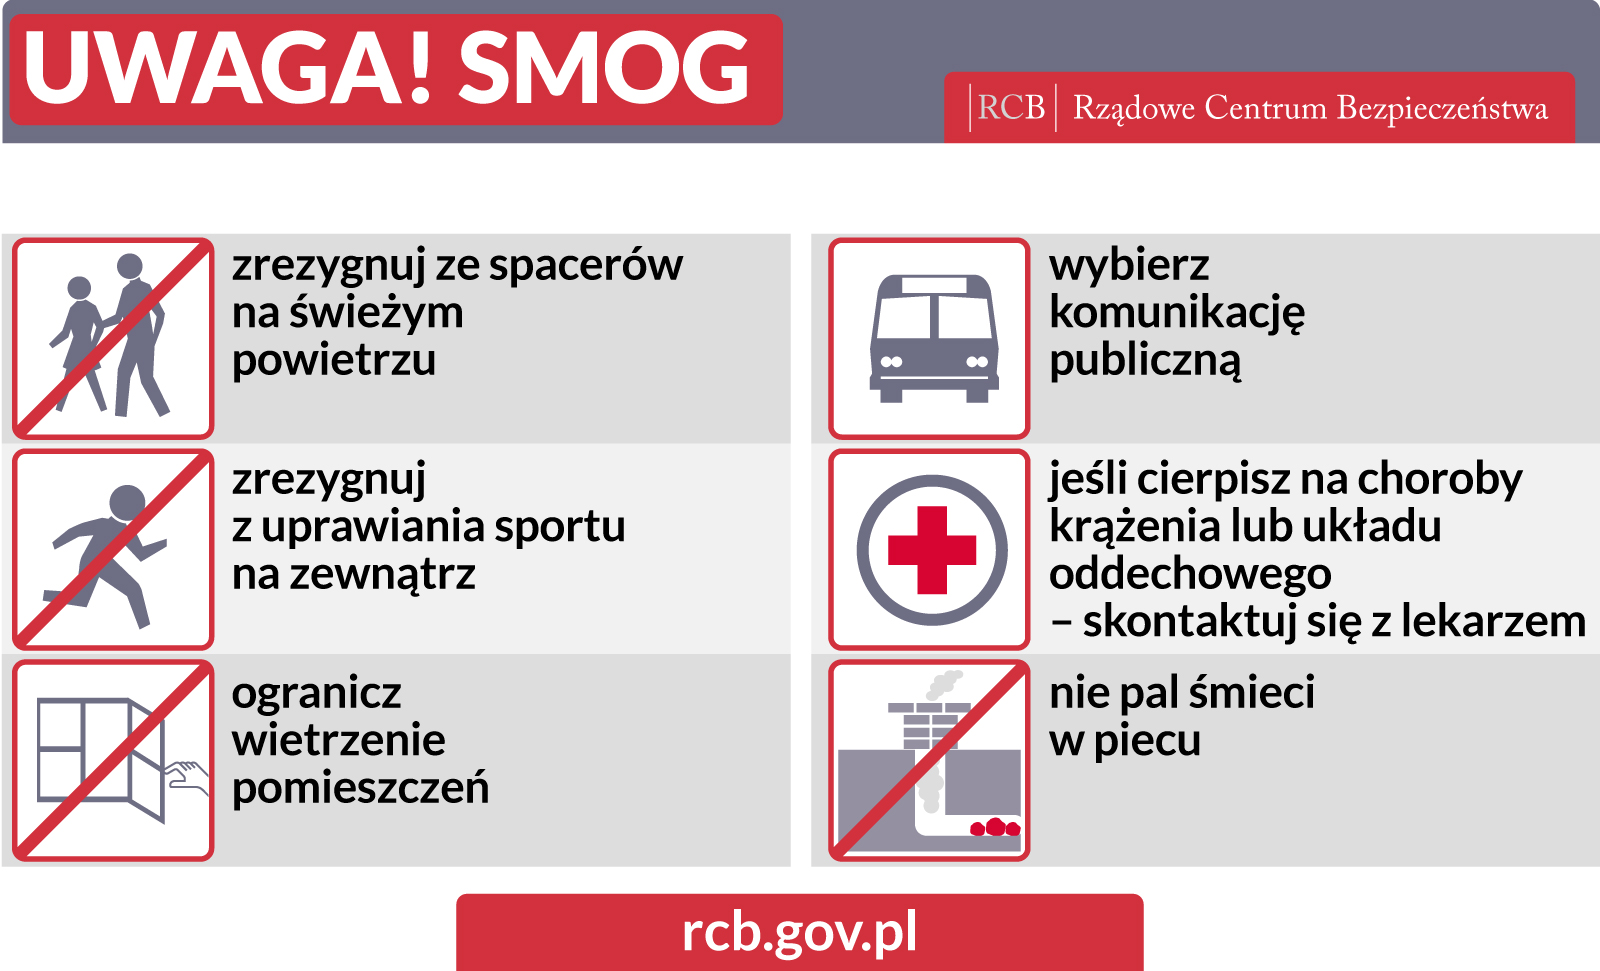 - rcb_smog.jpg